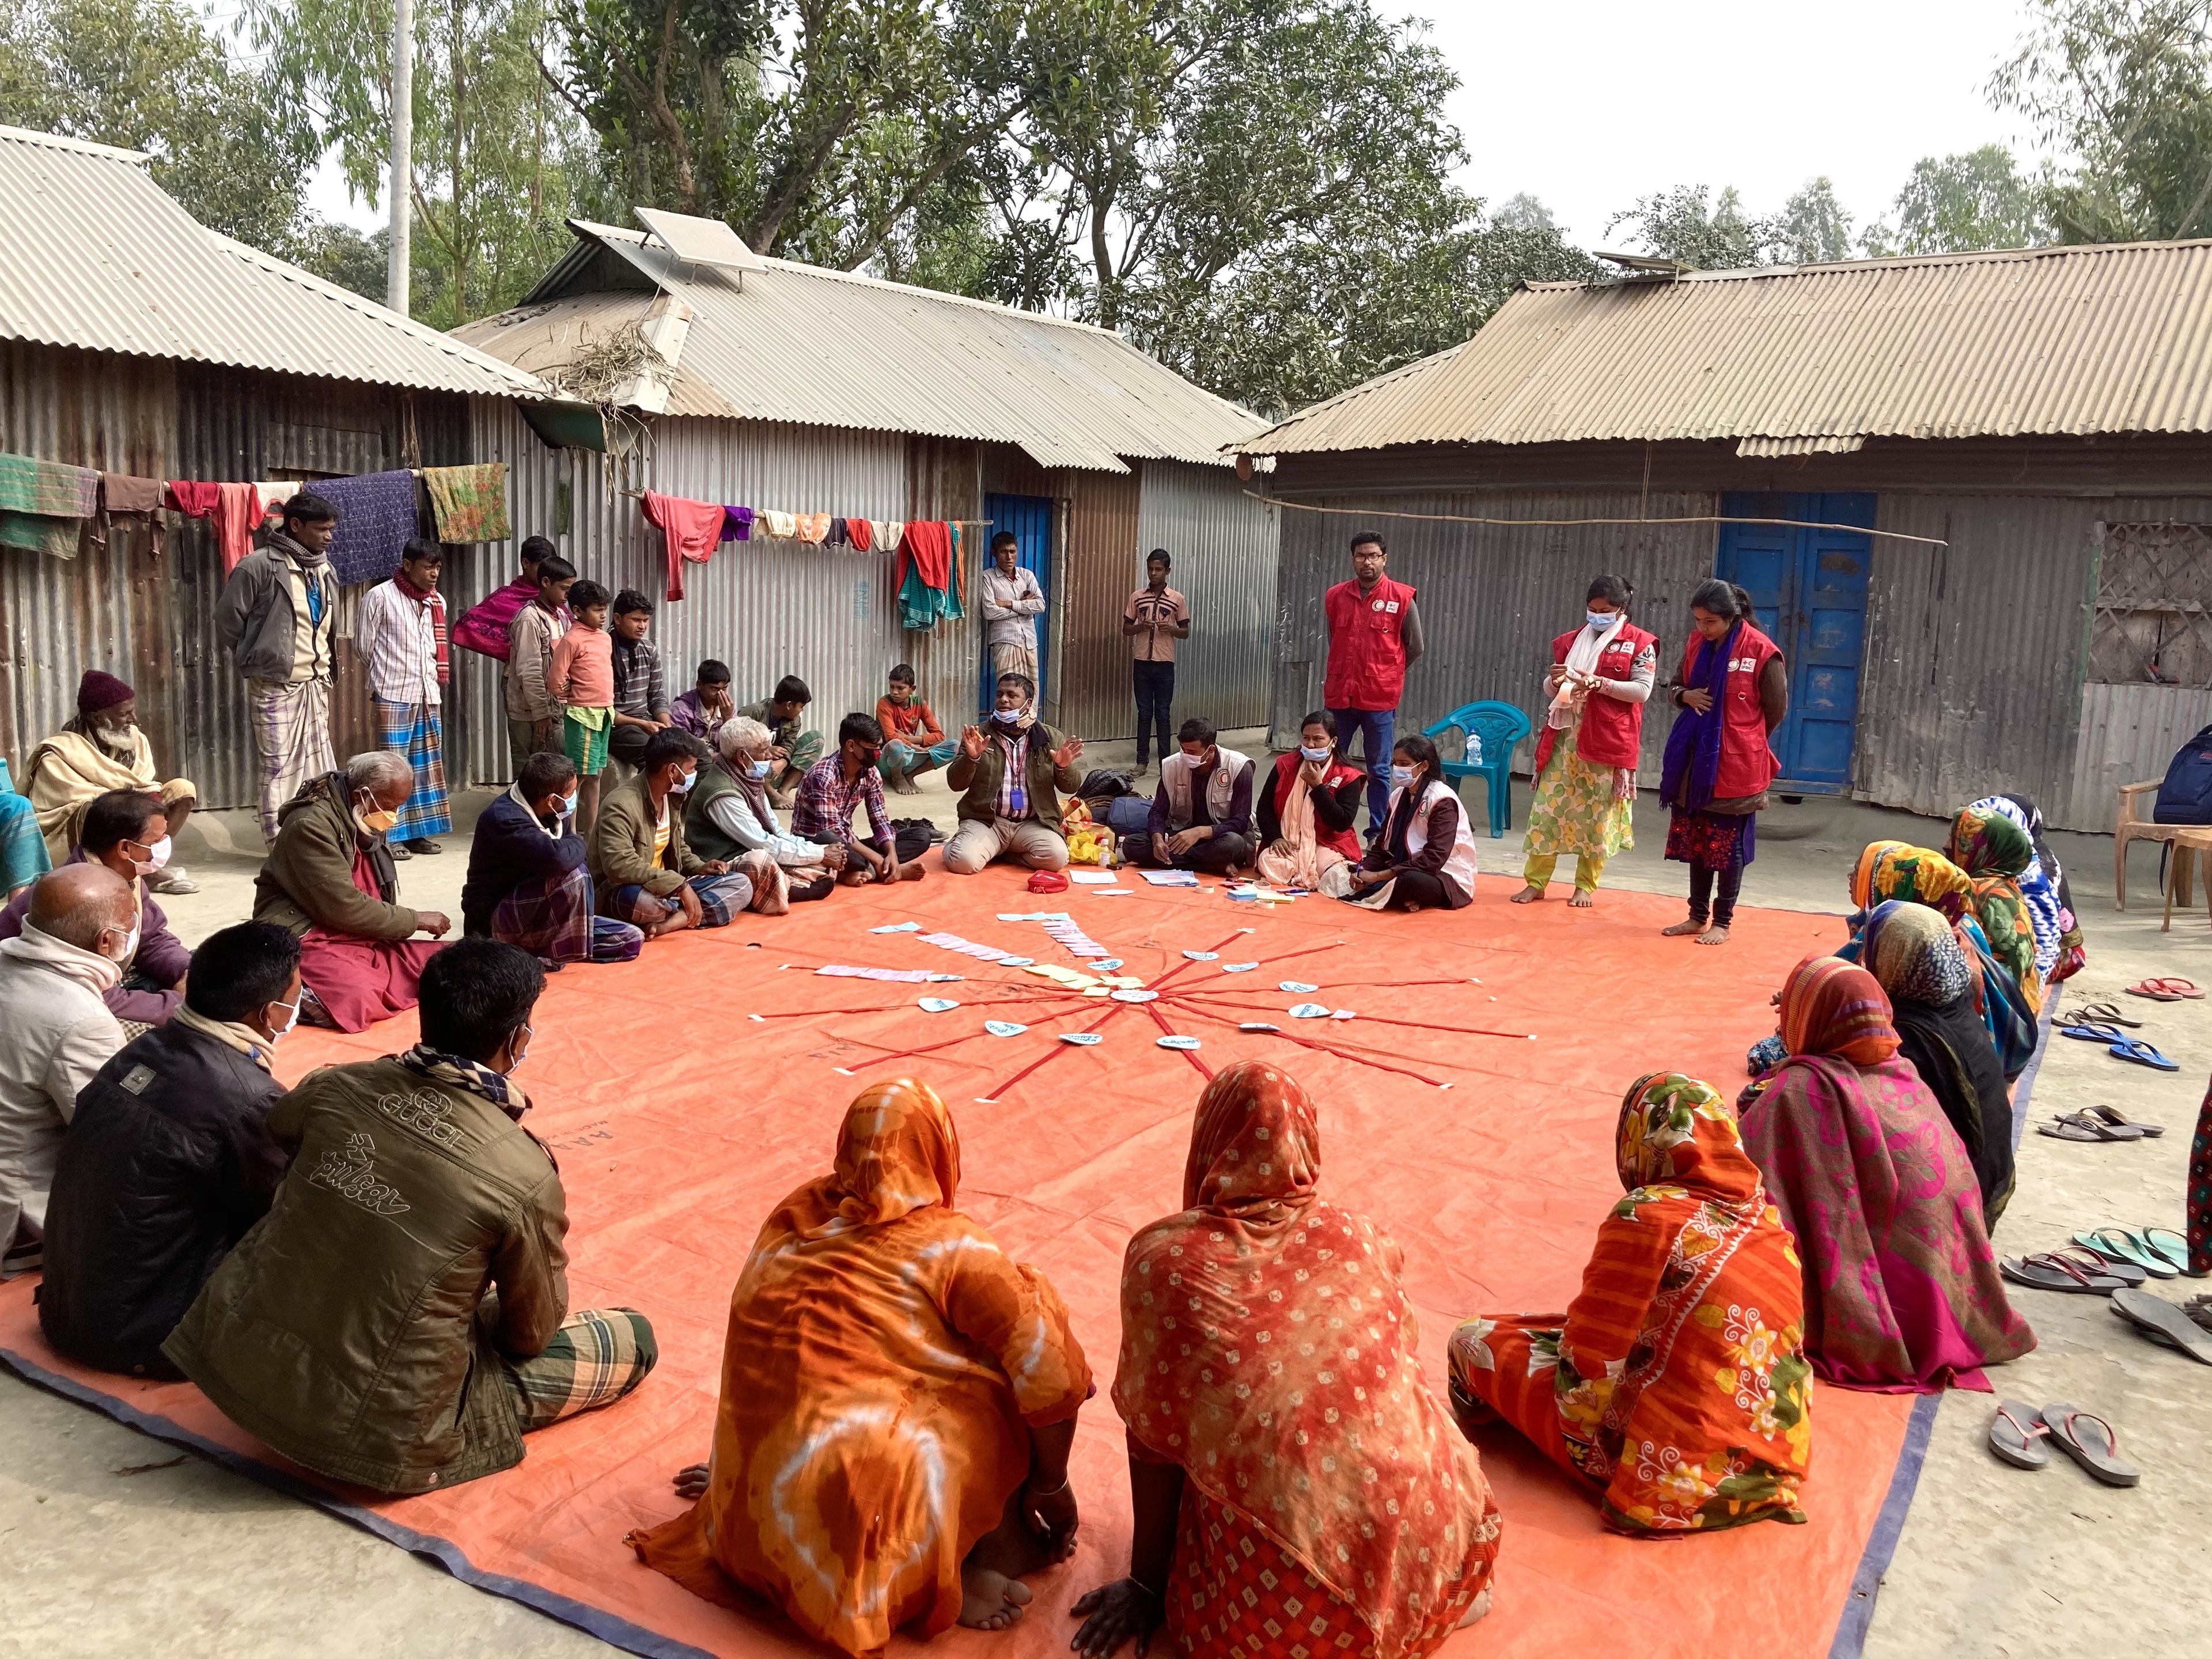 Des femmes et des hommes sont assis en cercle sur le sol d'un village du Bangladesh. Ils ont disposé au milieu des cartes étiquetées. On peut également voir des volontaires du Croissant-Rouge du Bangladesh.